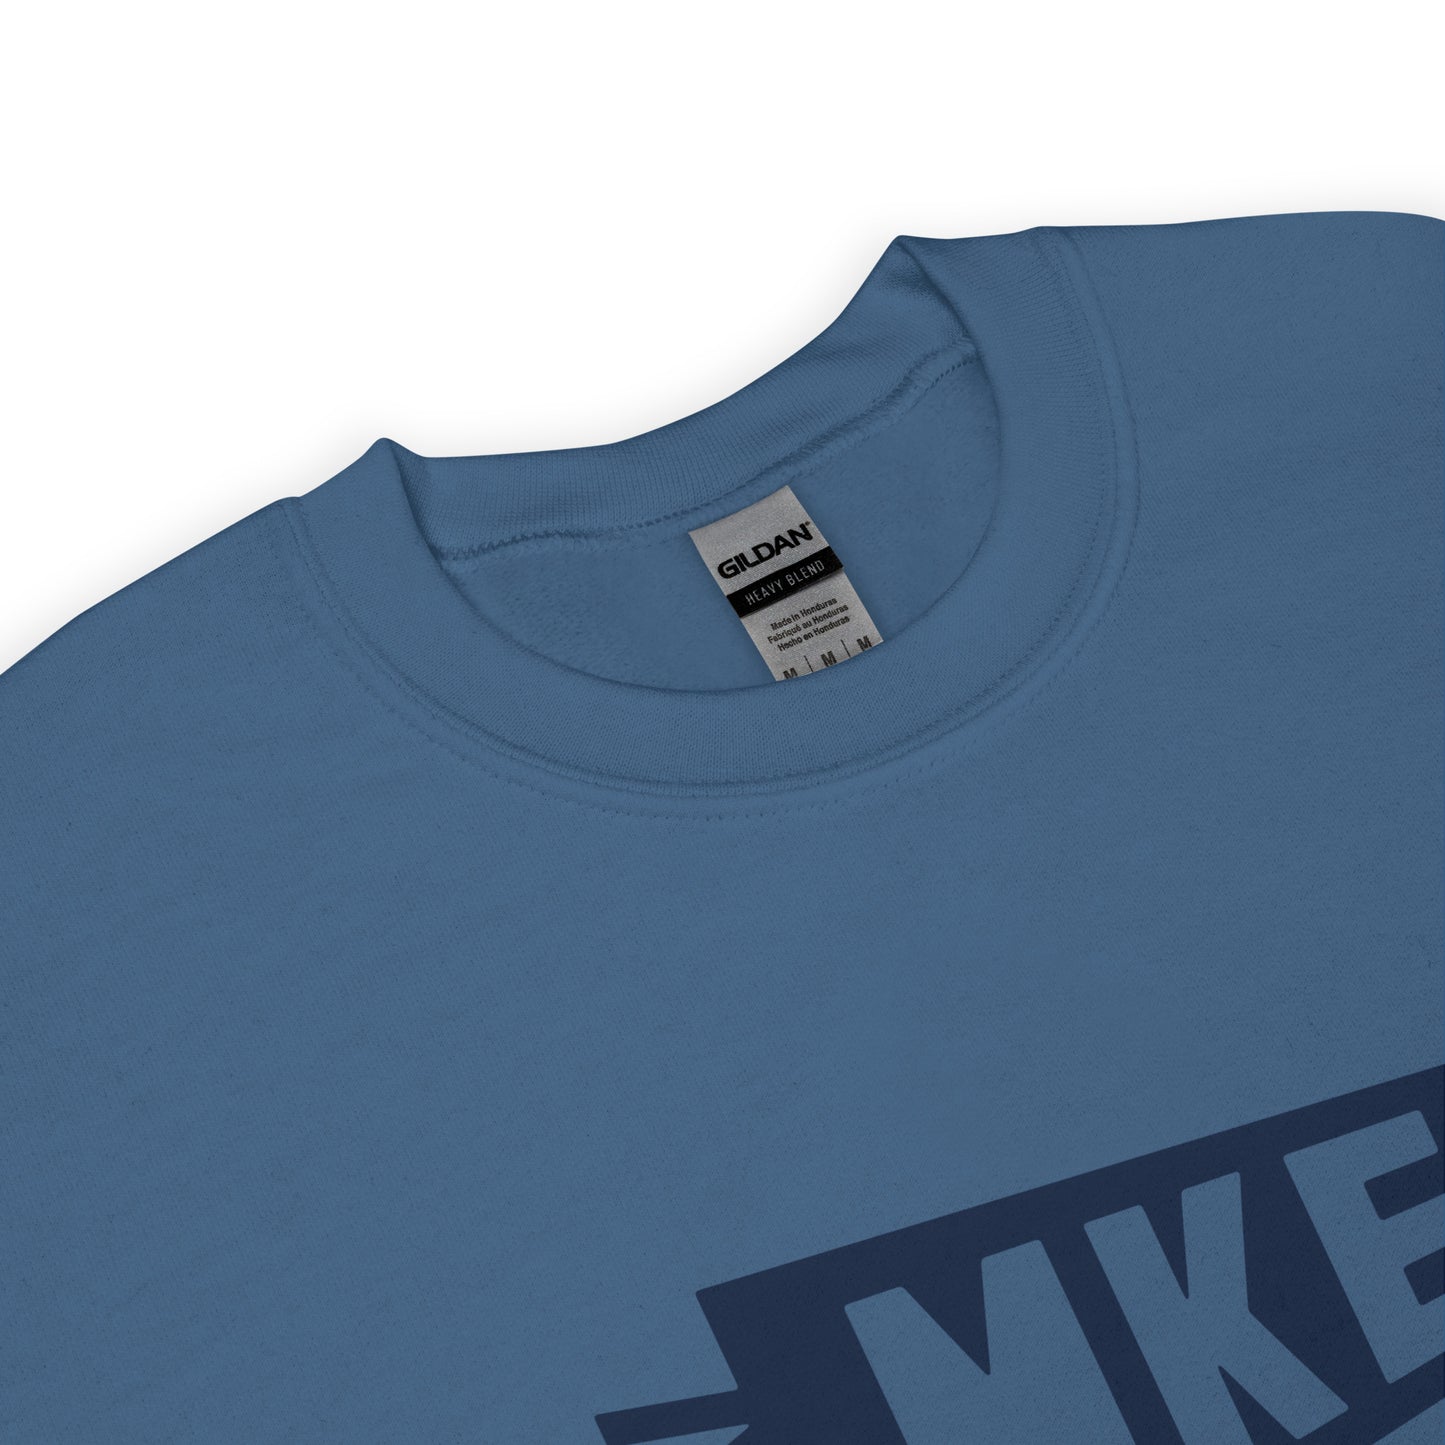 Airport Code Sweatshirt - Navy Blue Graphic • MKE Milwaukee • YHM Designs - Image 04